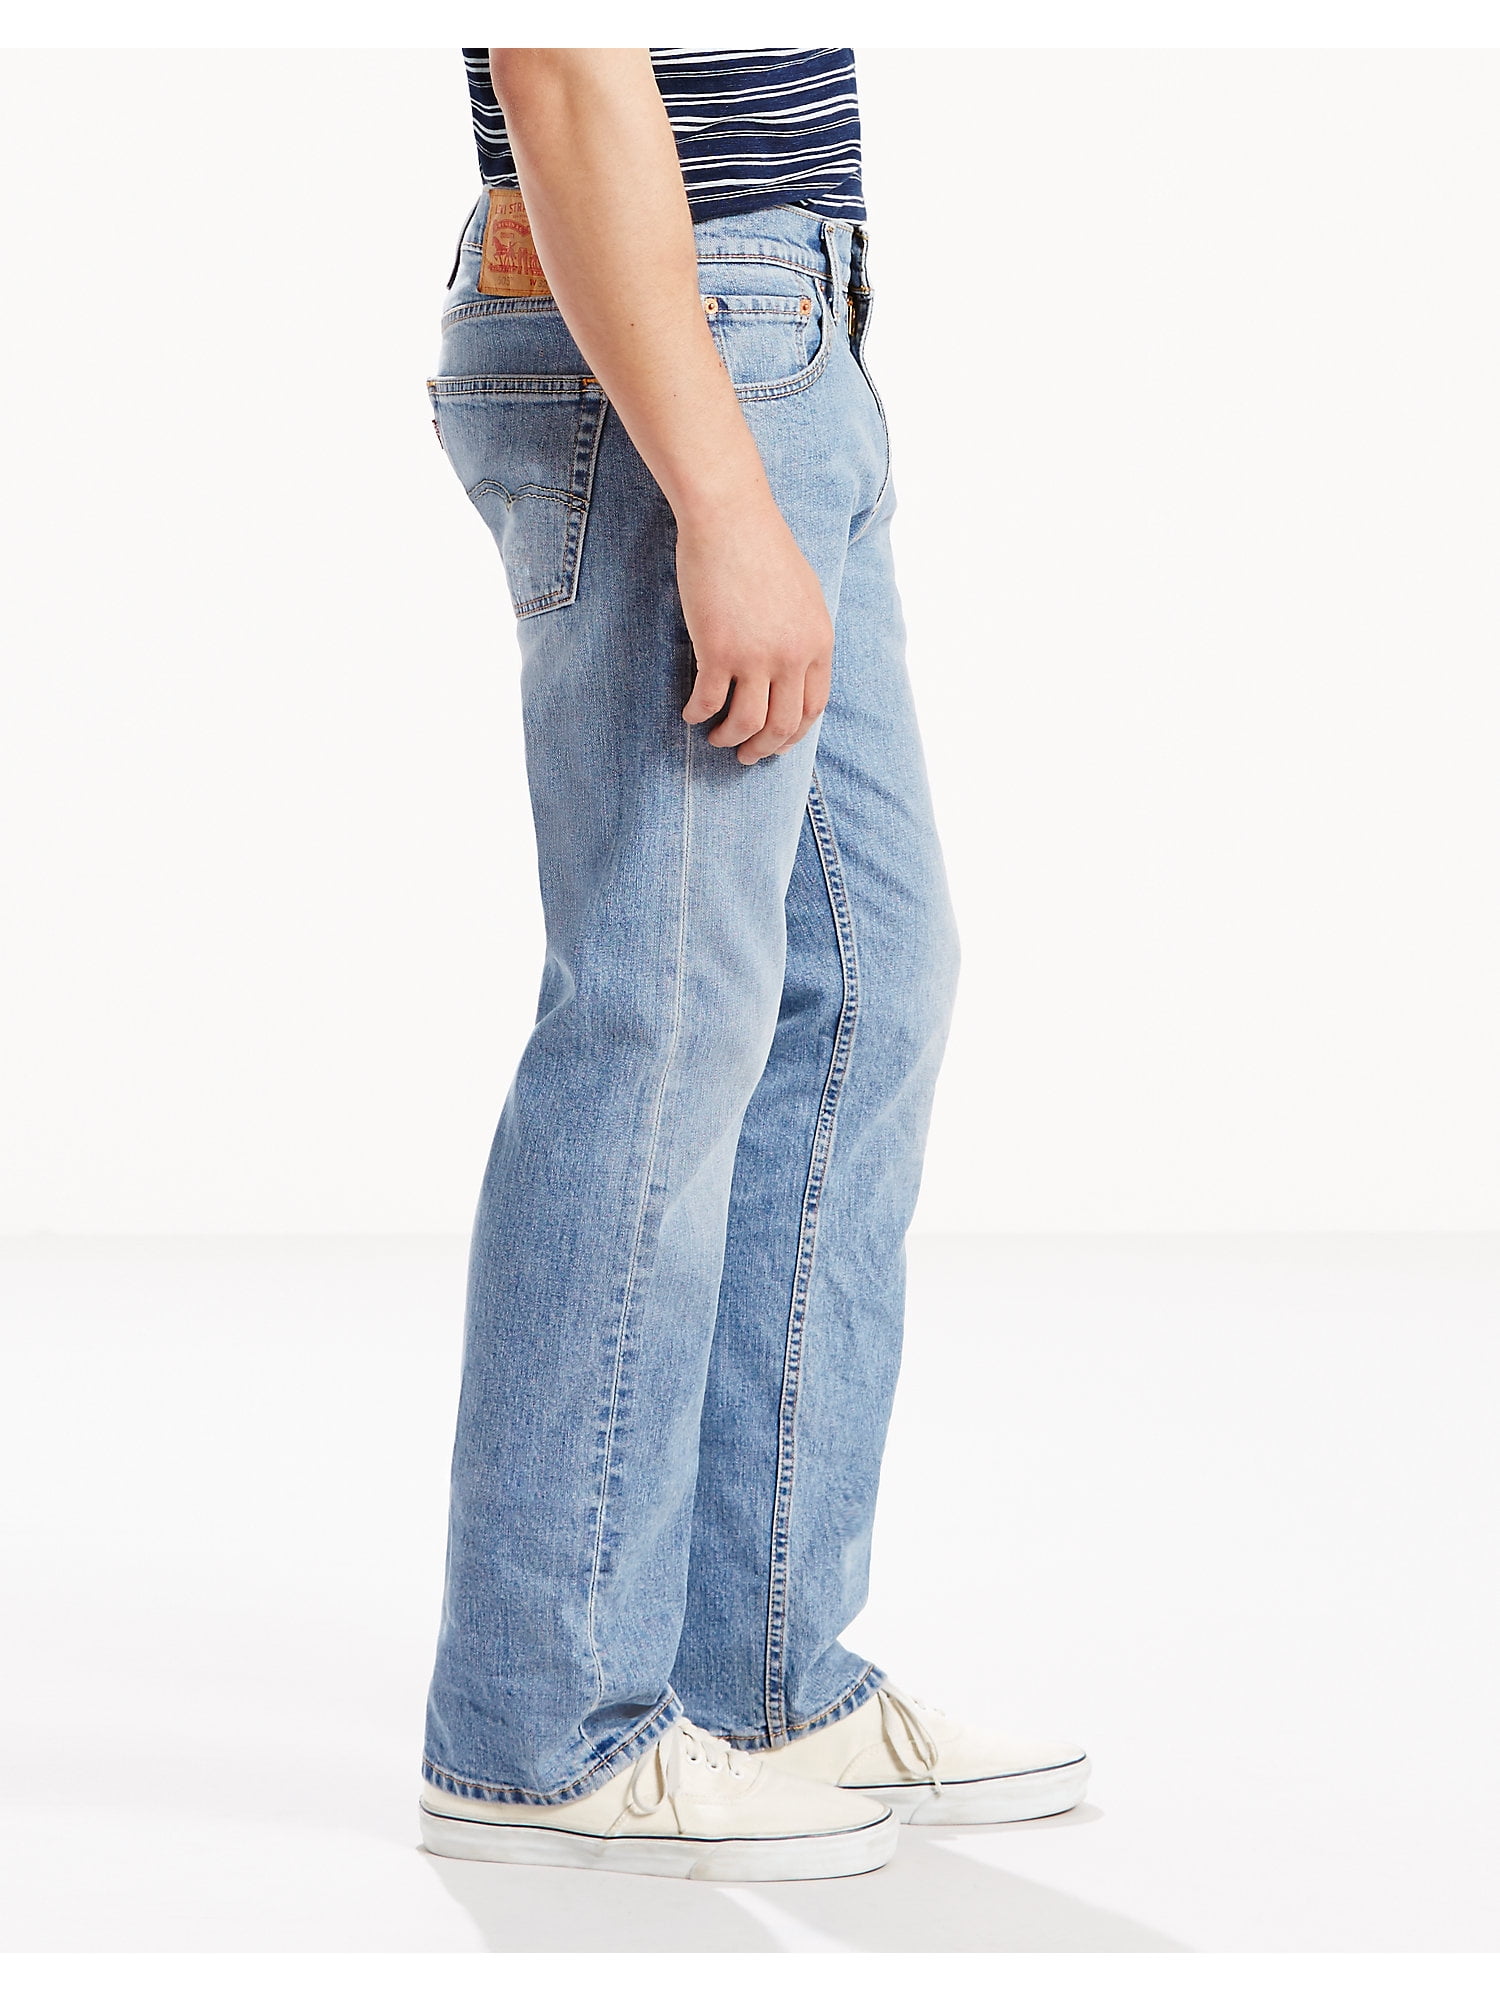 levis 505 jeans sale